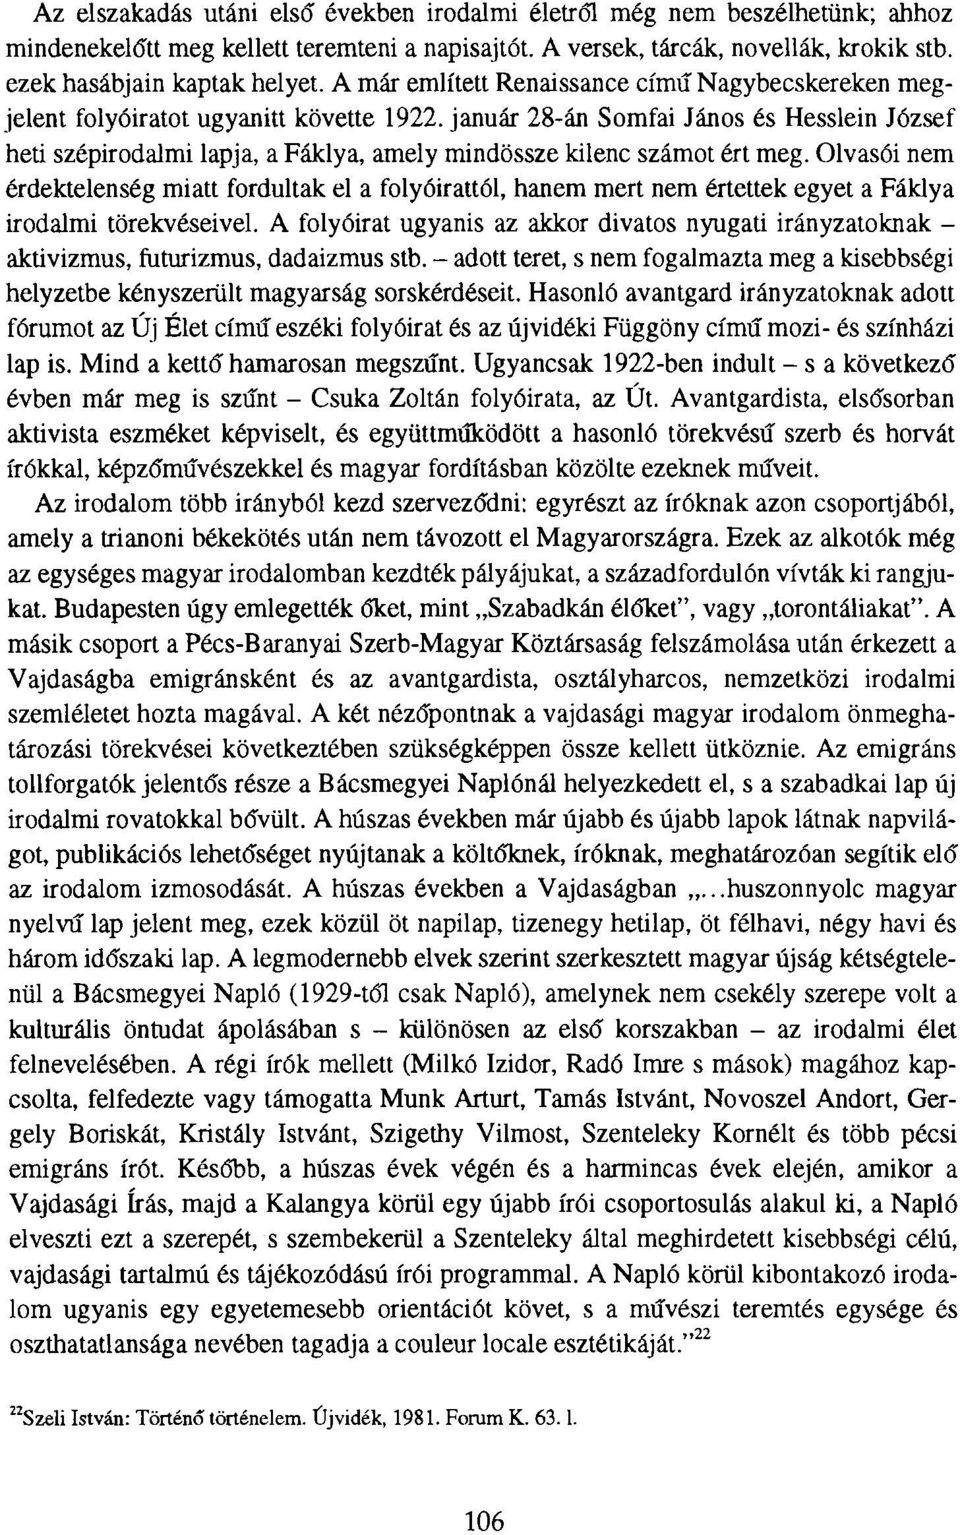 január 28-án Somfai János és Hesslein József heti szépirodalmi lapja, a Fáklya, amely mindössze kilenc számot ért meg.